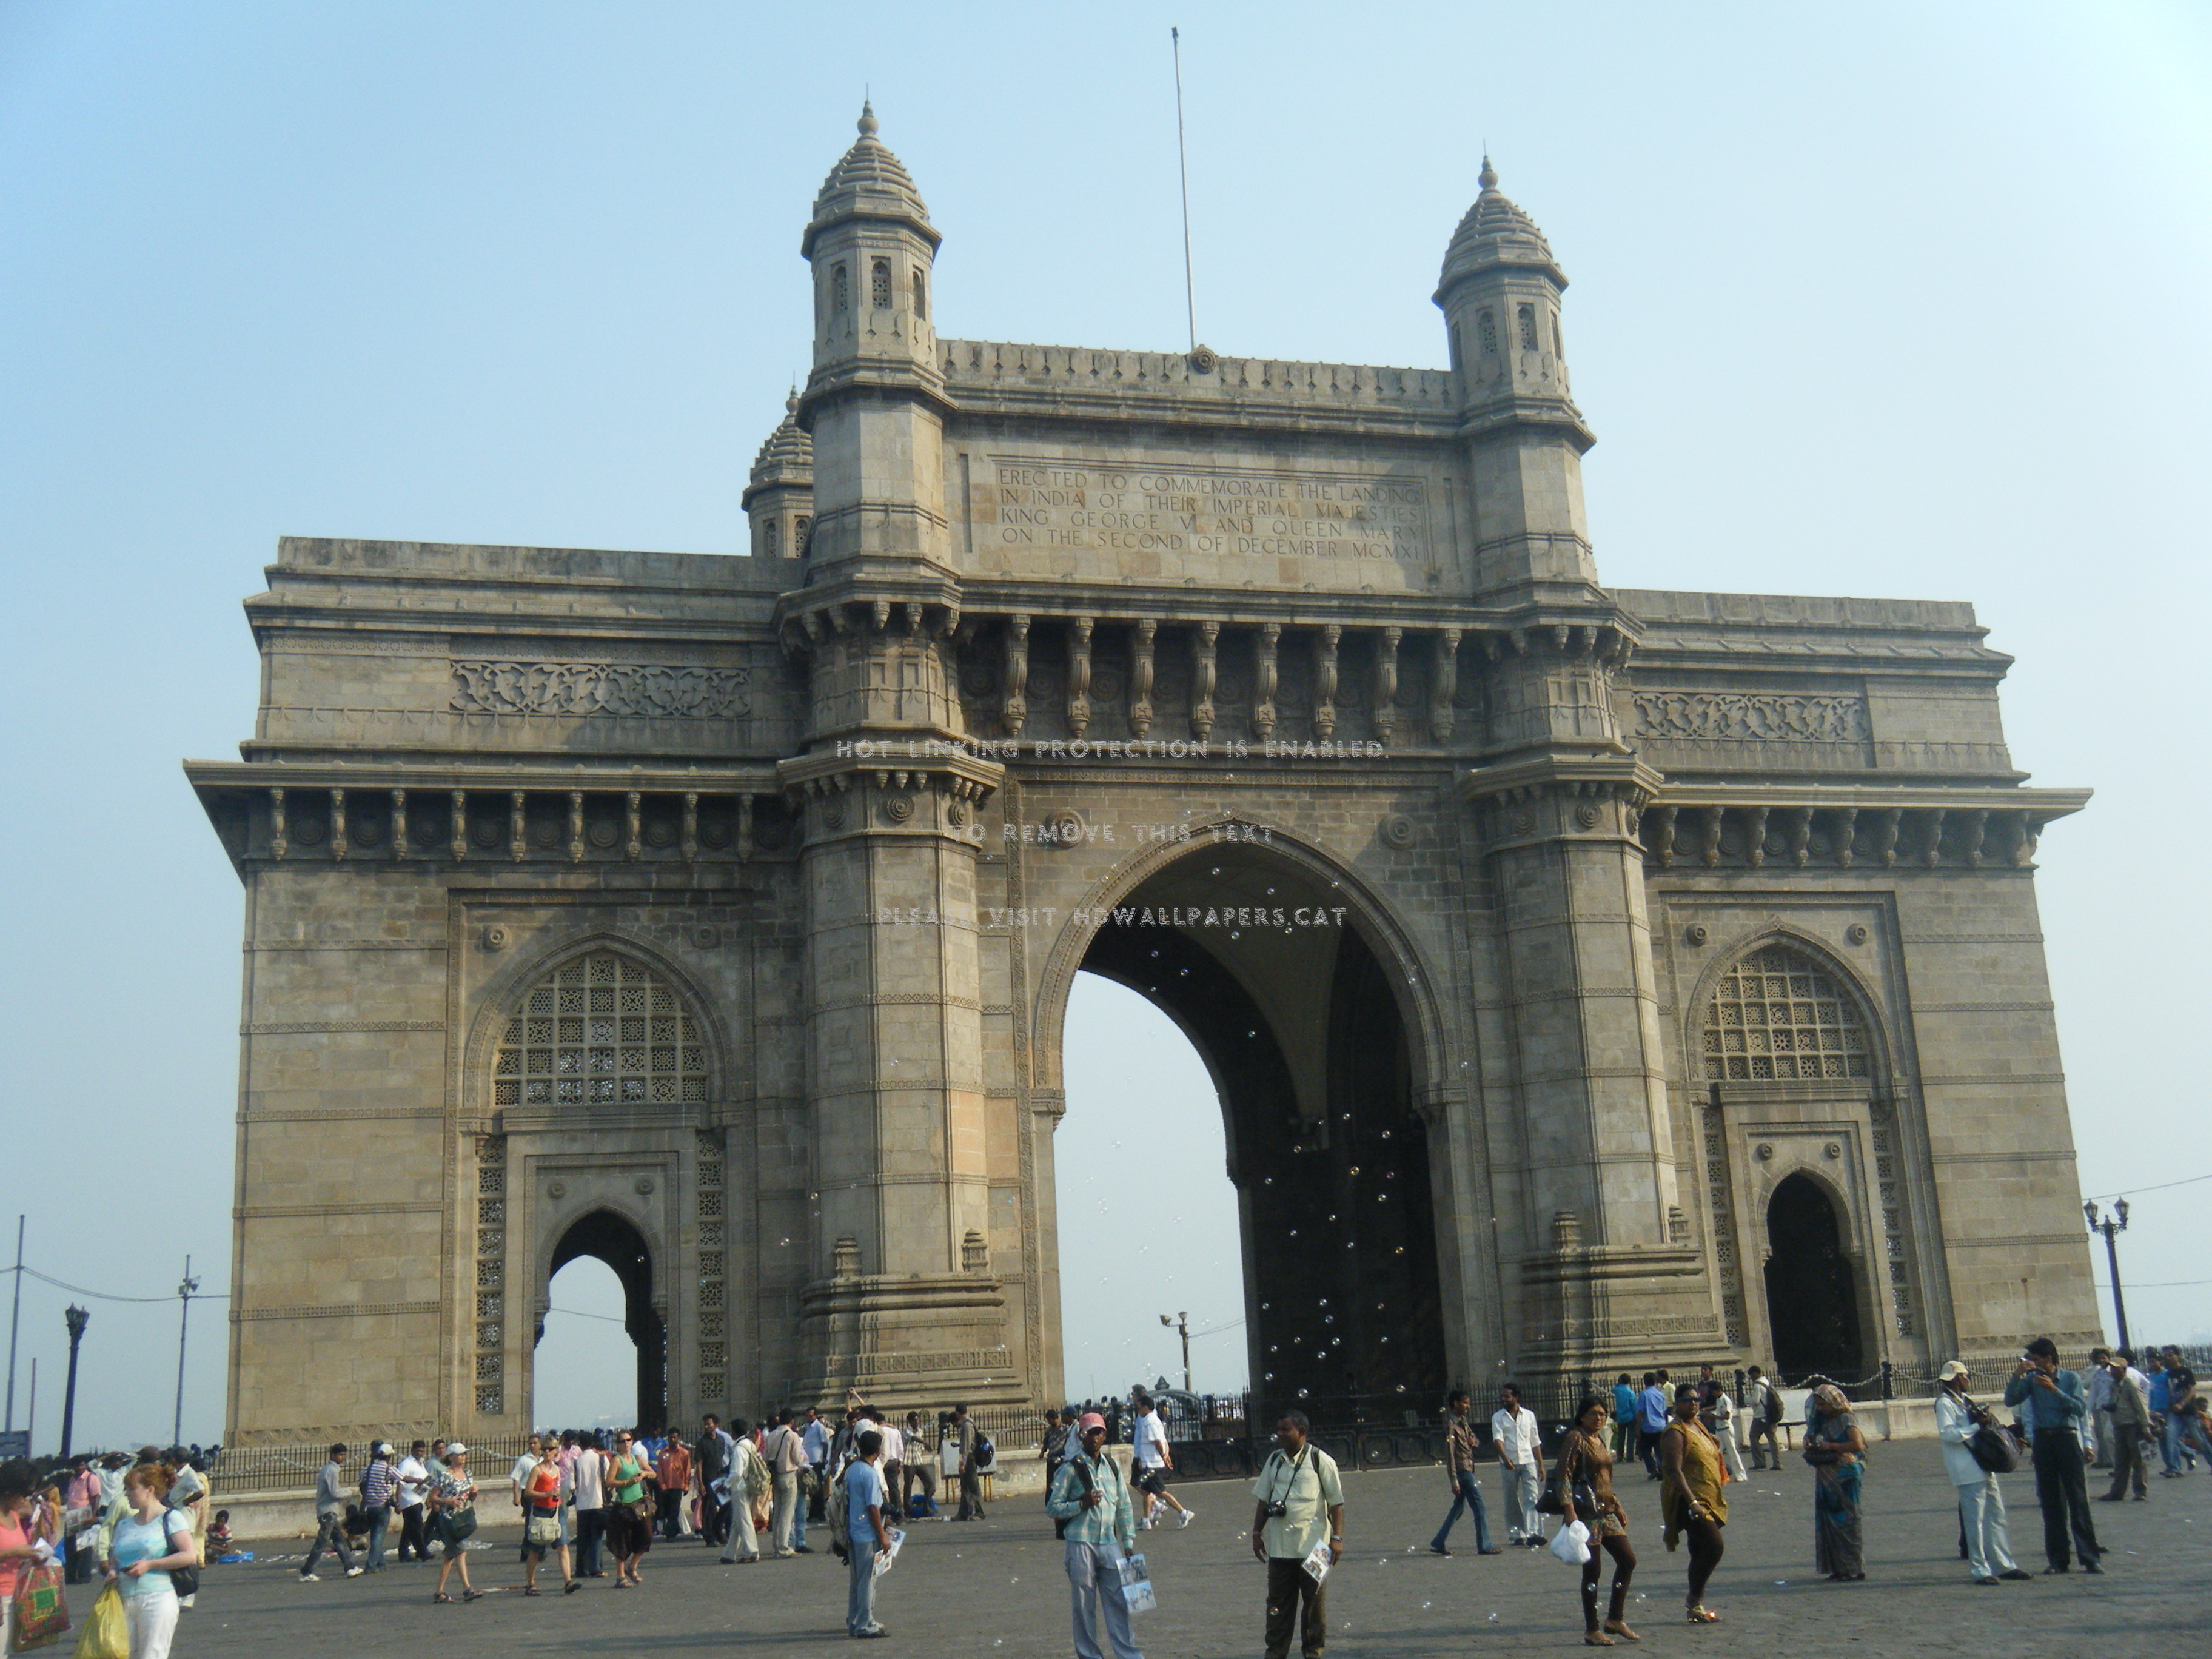 インドのゲートウェイの壁紙,アーチ,凱旋門,建築,記念碑,古典建築